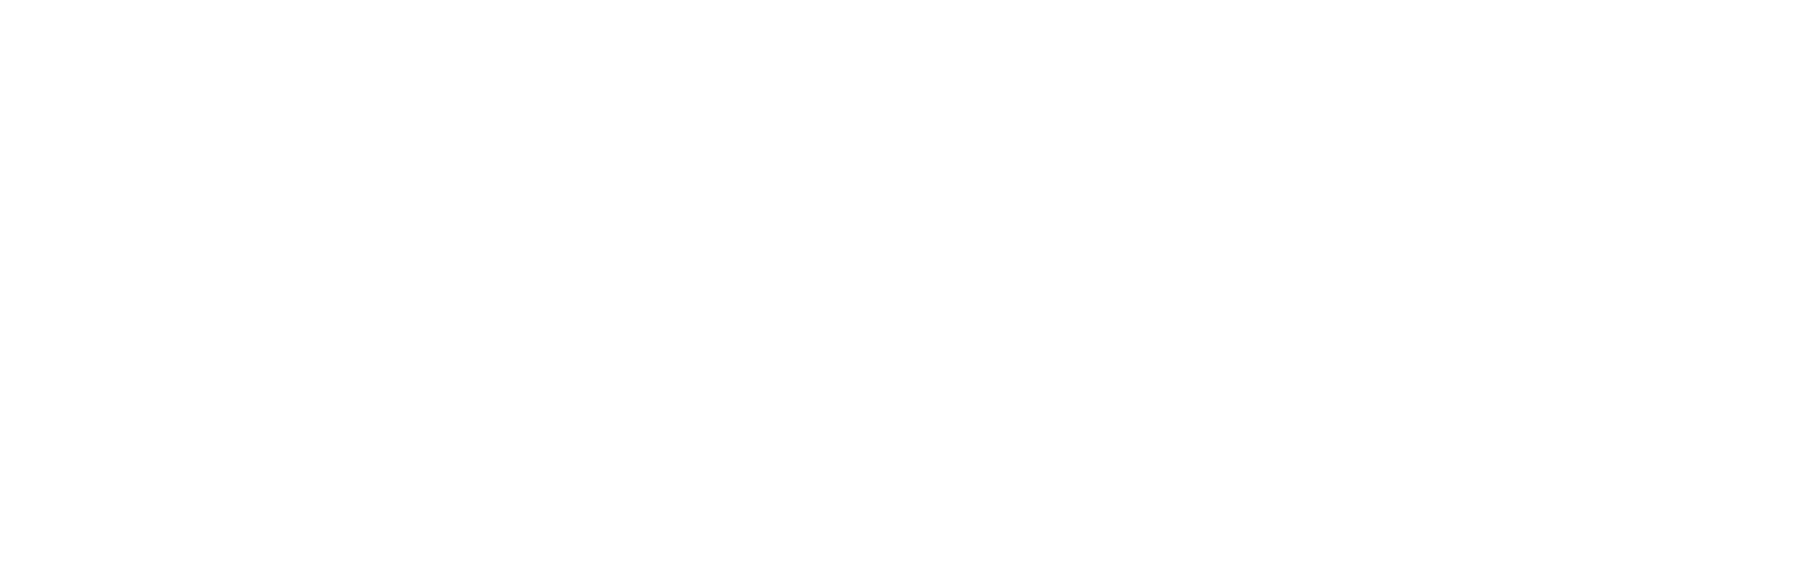 Aqua-Dyne - Shape Technologies Group